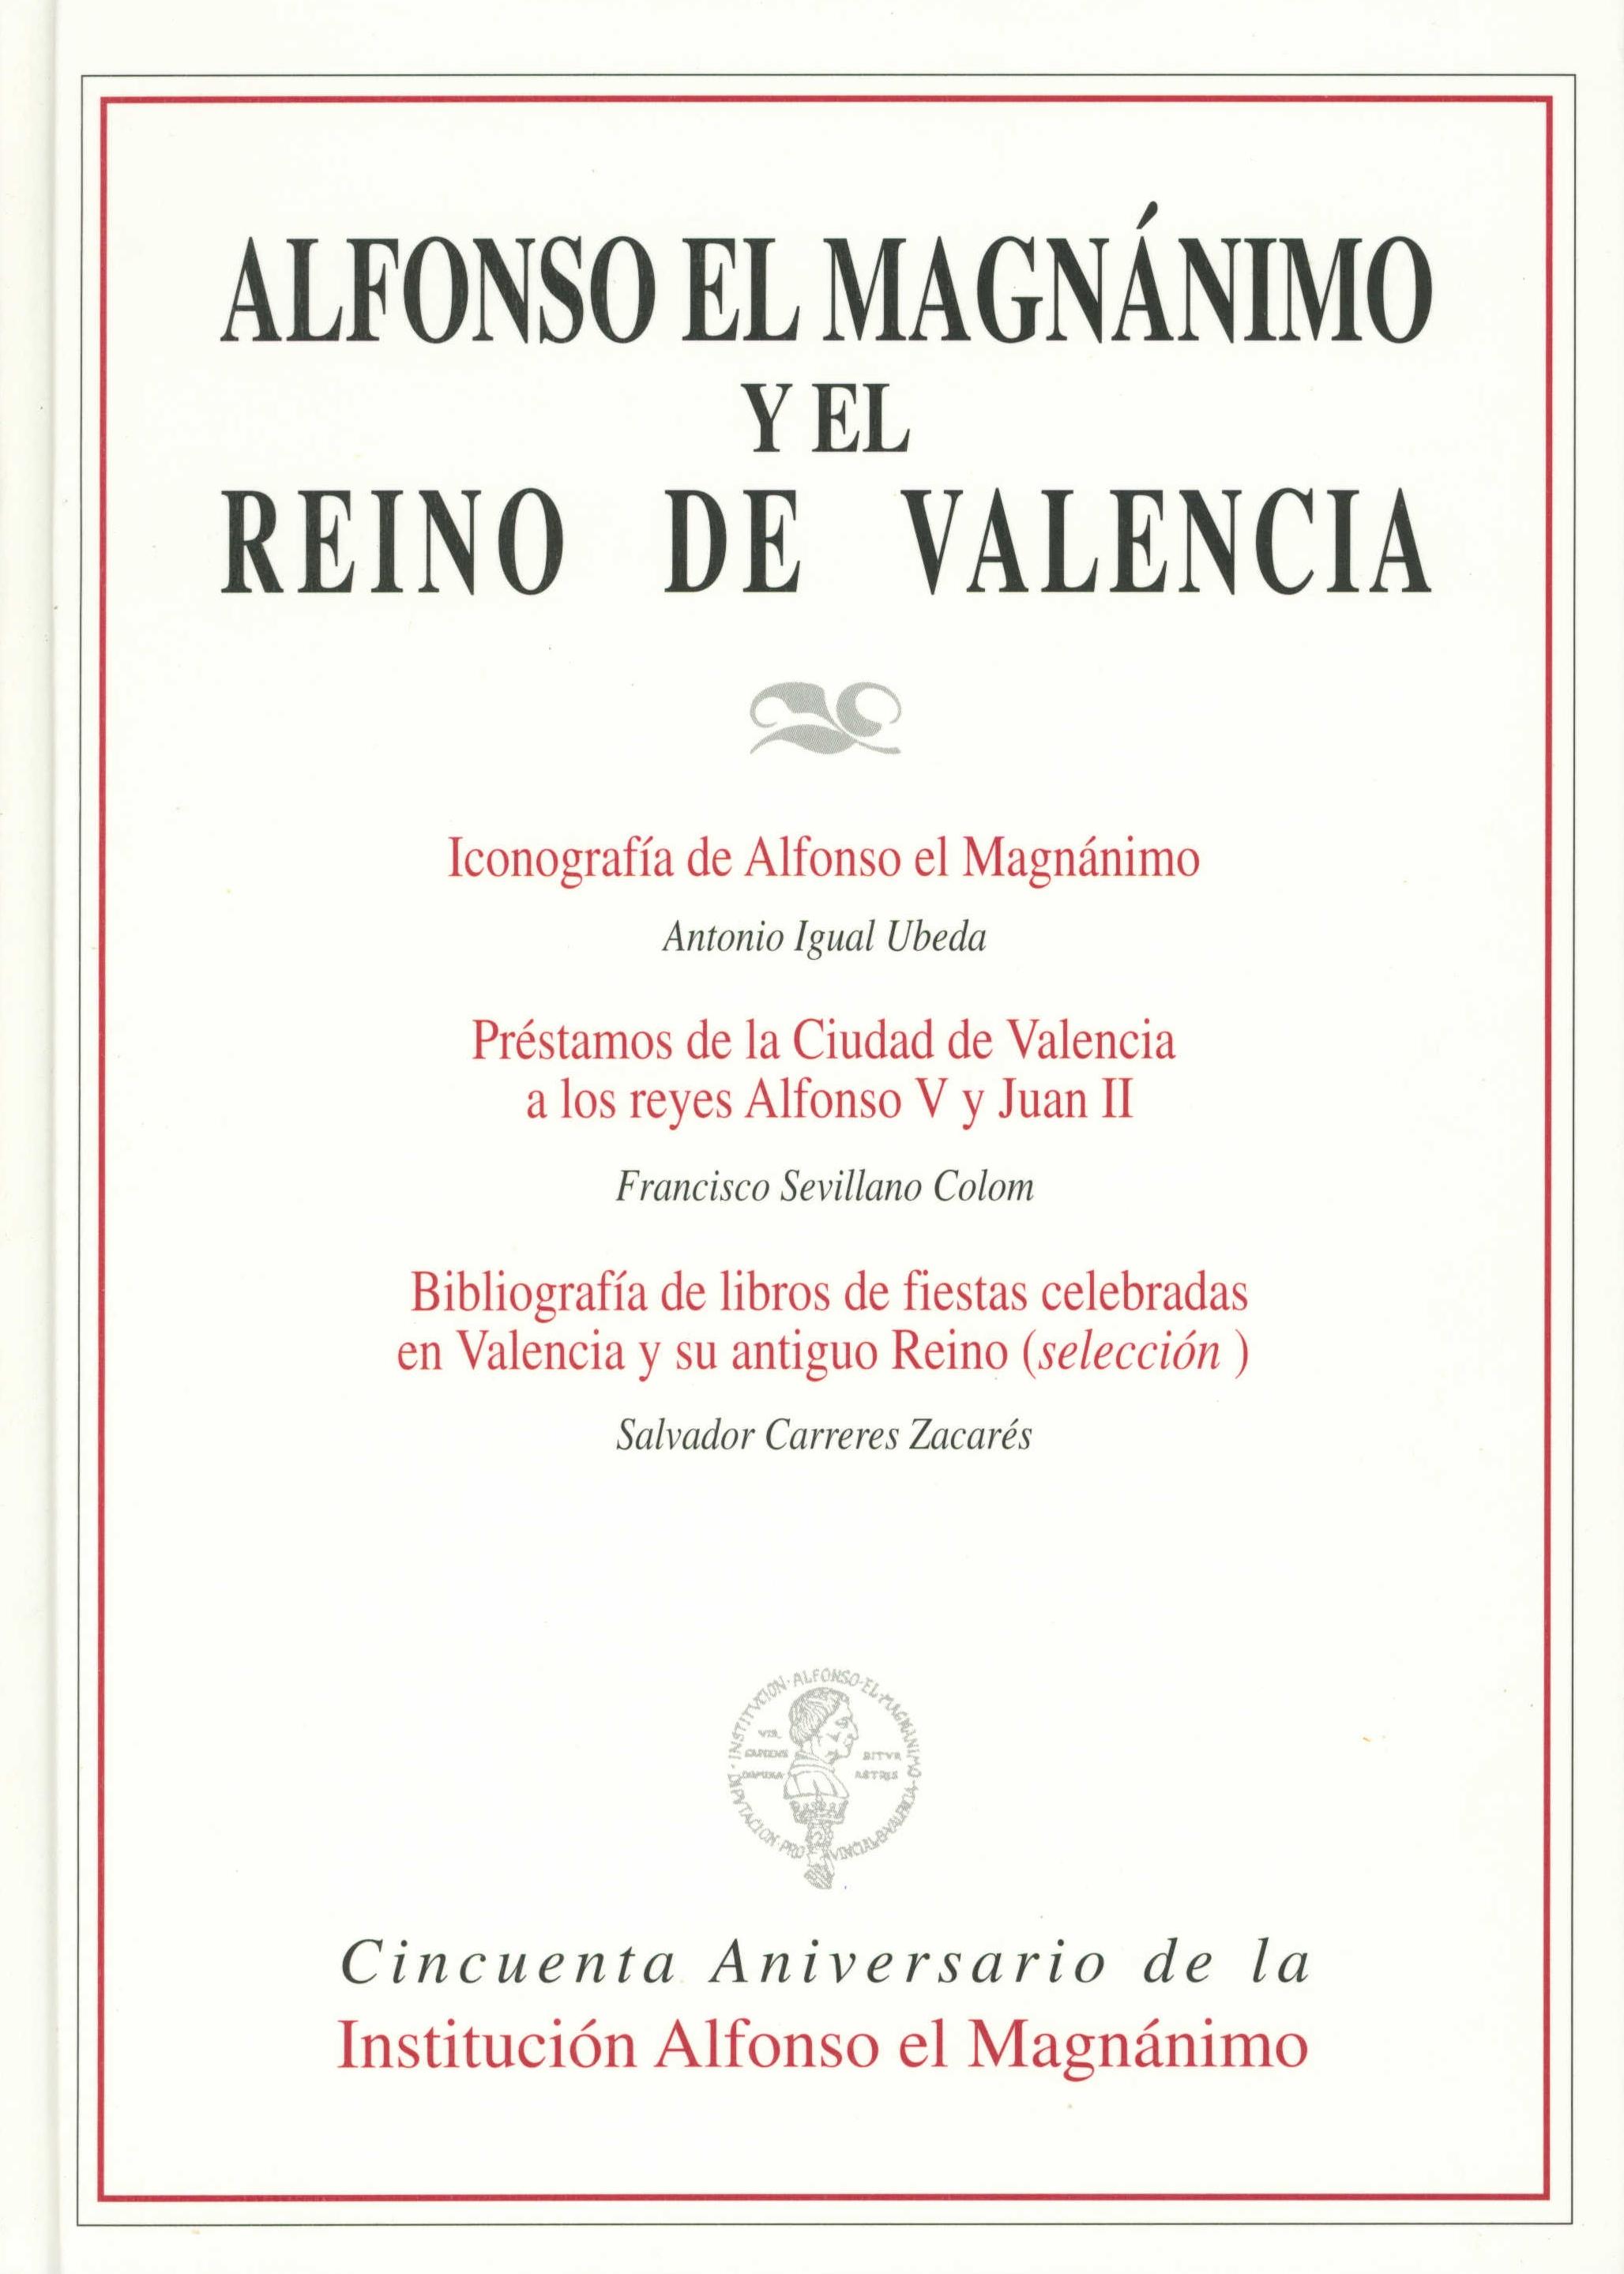 Alfonso el Magnánimo y el Reino de Valencia "ICONOGRAFIA... PRESTAMOS... BIBLIOGRAFIA"